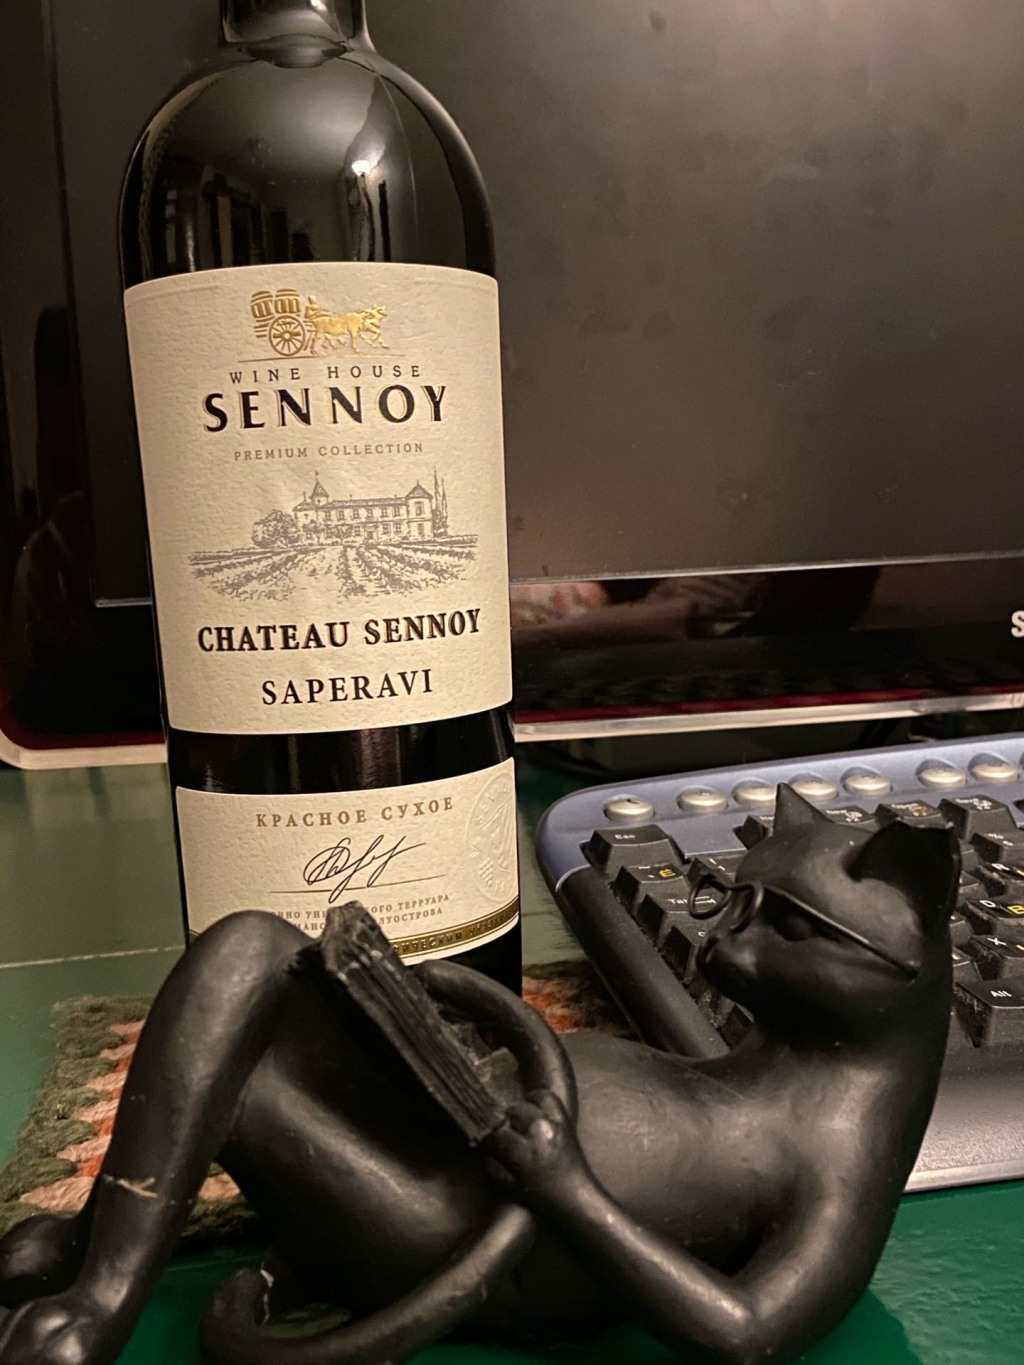 Wine House Sennoy - Сложновато найти, но...)